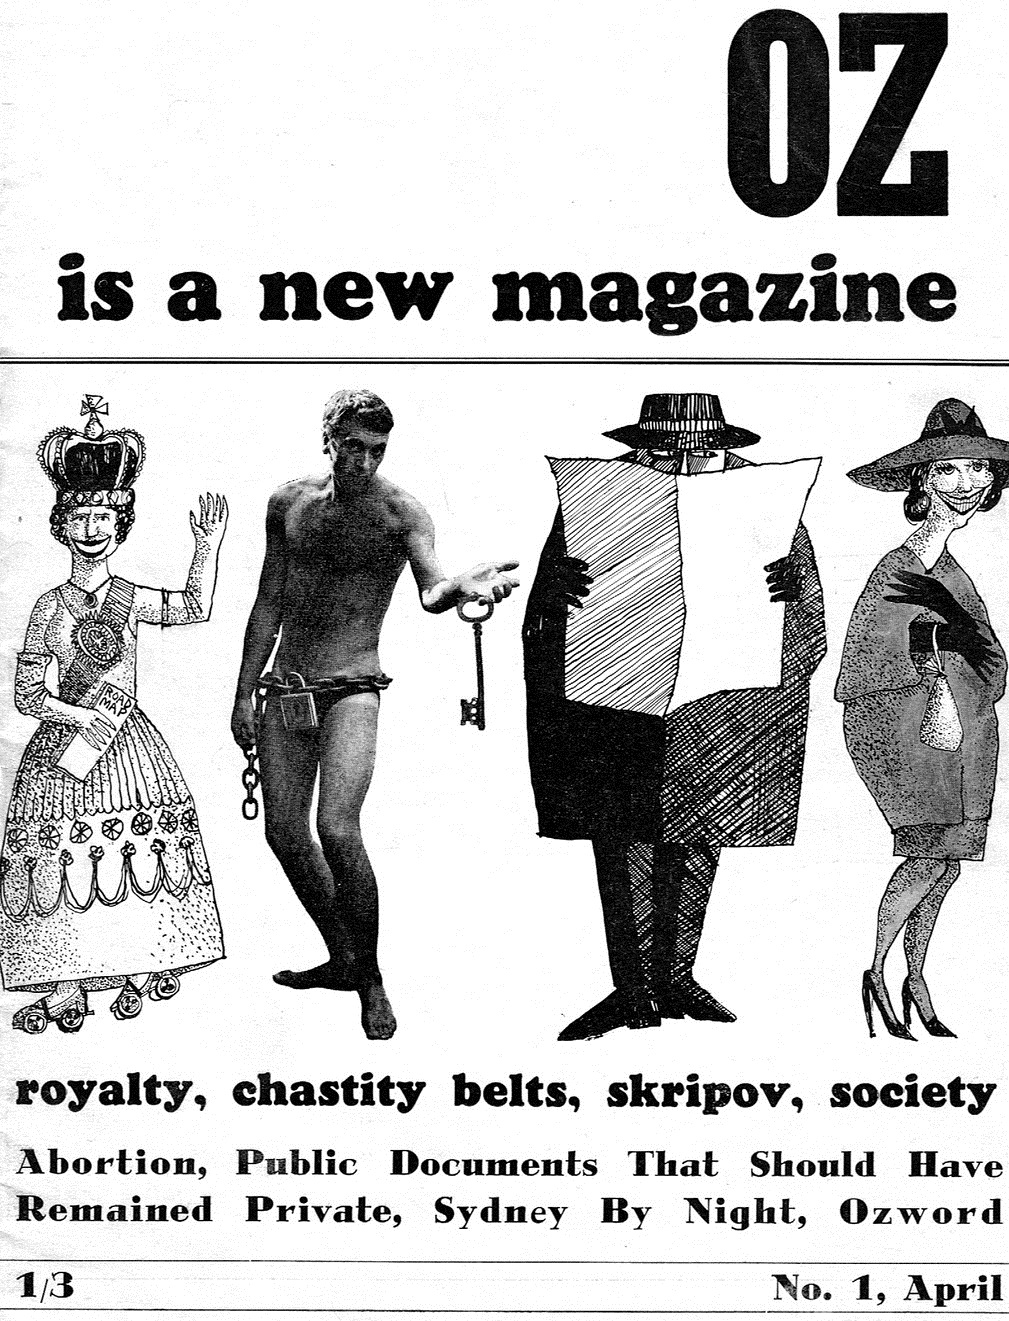 Oz (журнал). Роялти журнал